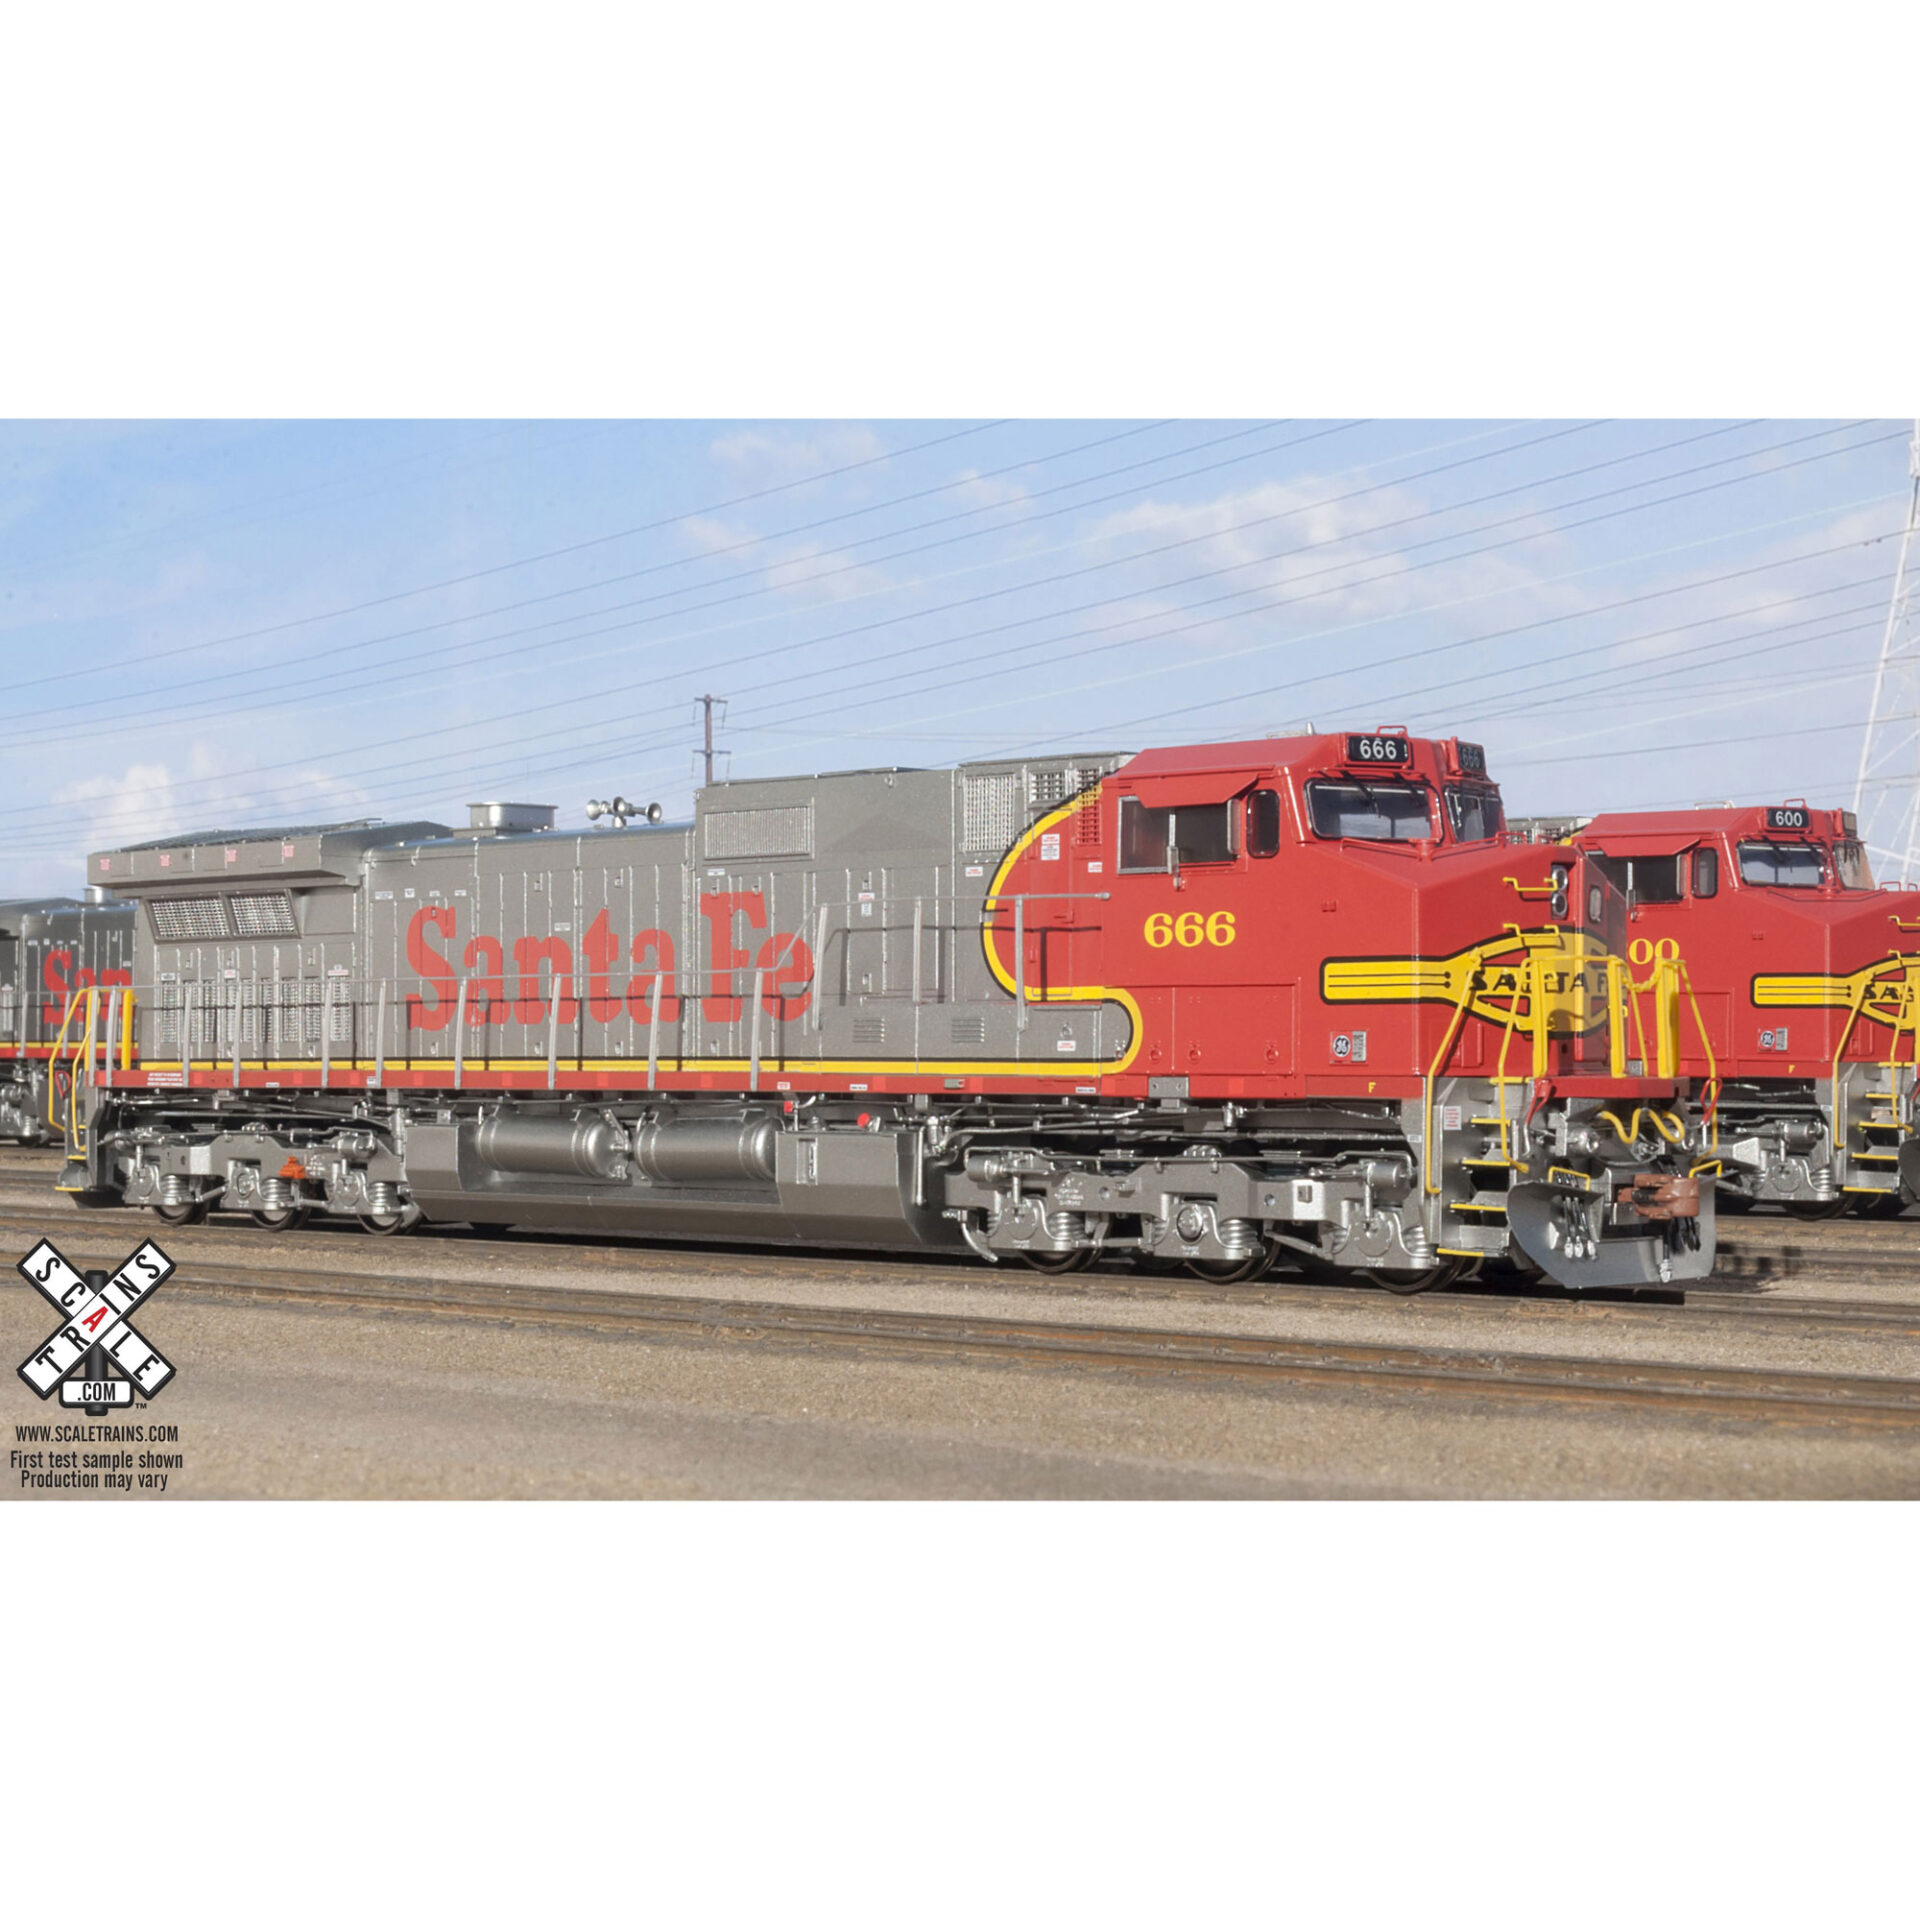 Scale Trains HO Rivet Counter C44-9W Santa Fe w/ DCC & Sound 